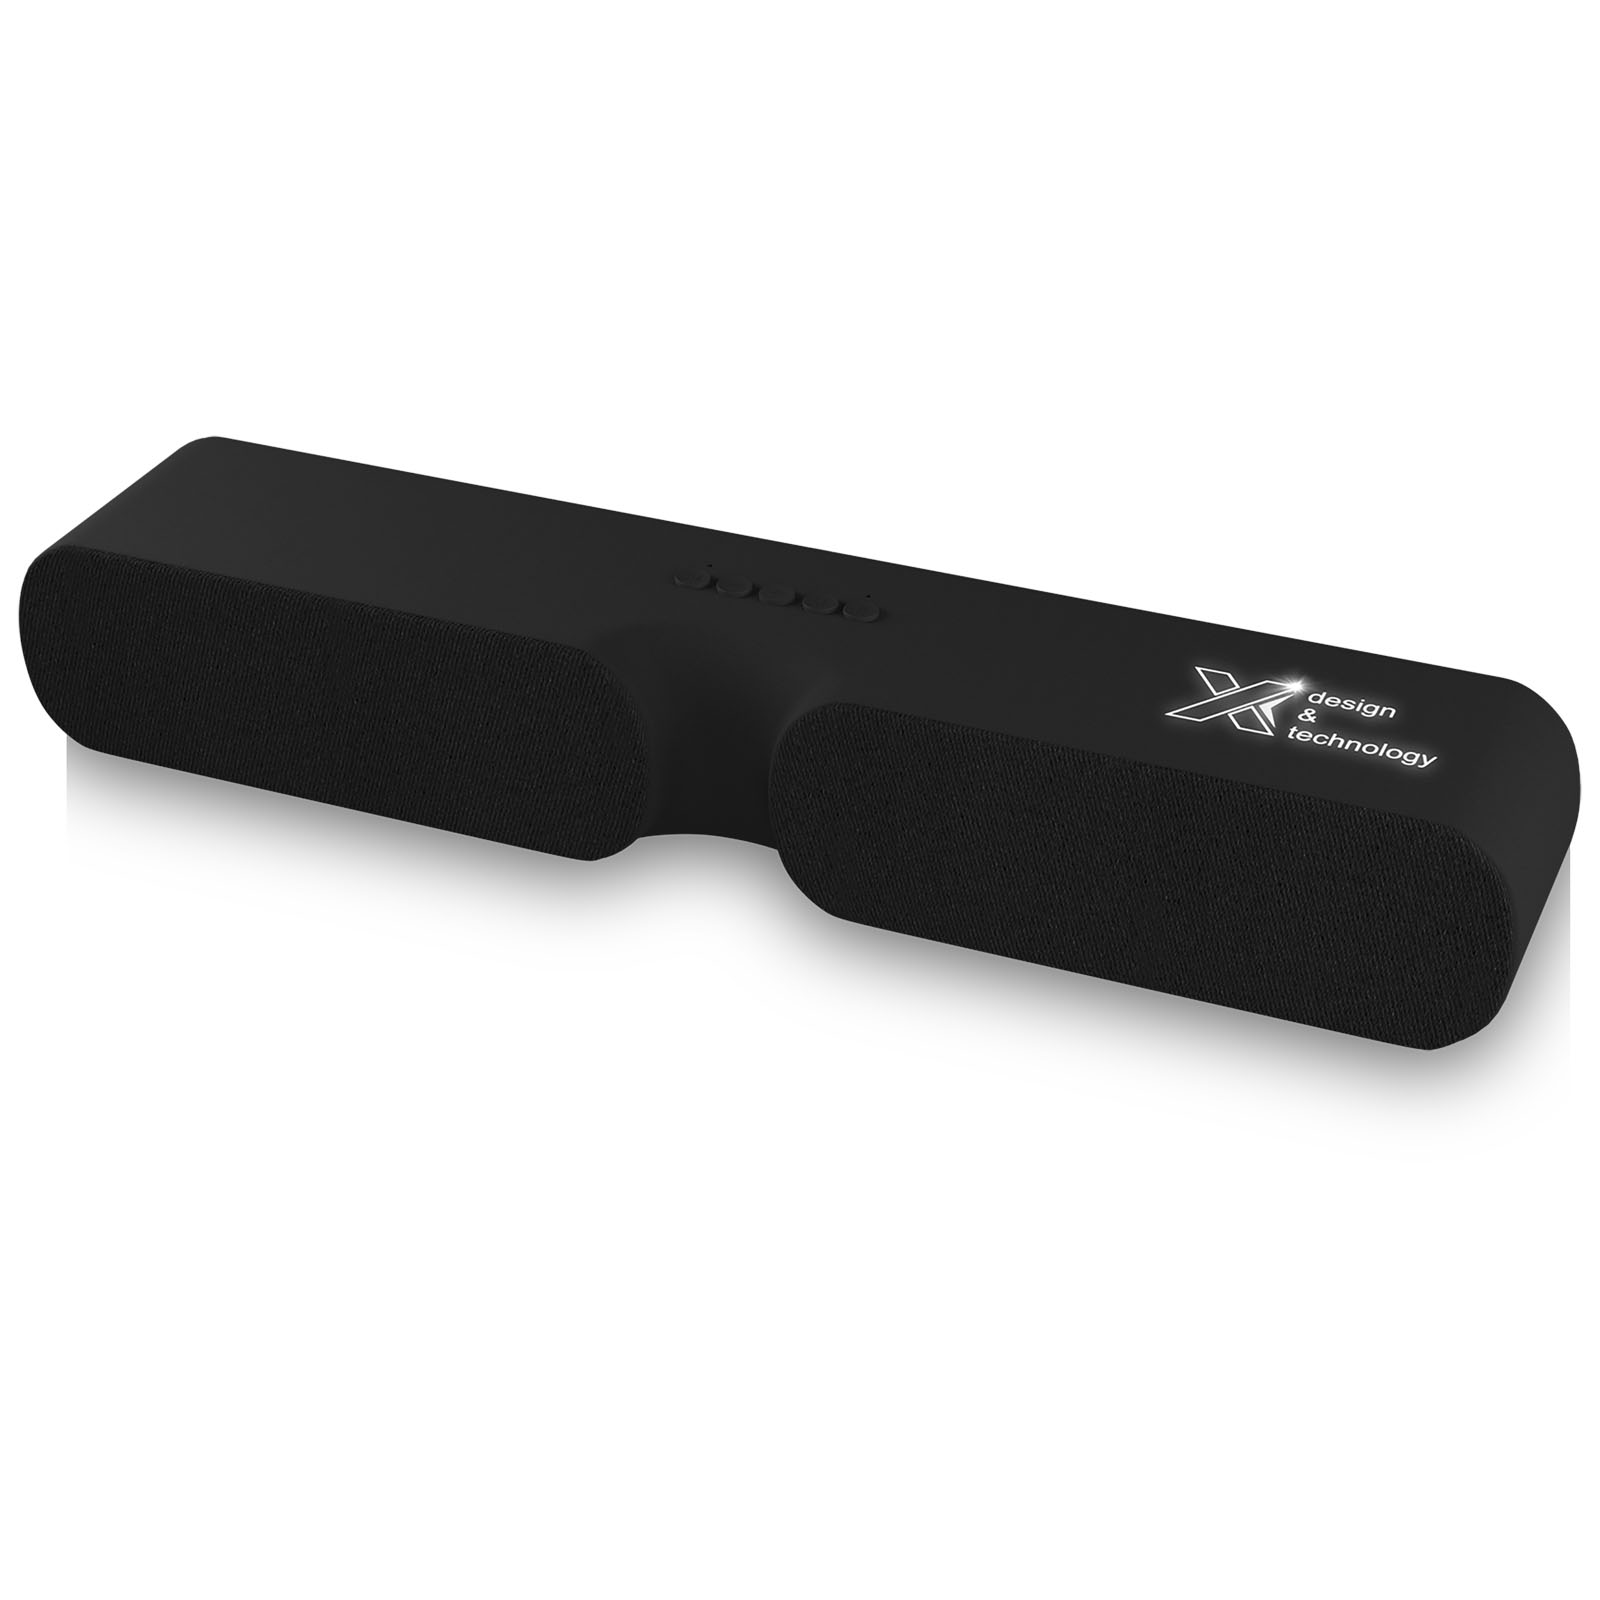 Barre de son Bluetooth avec logo lumineux et microphone intégré - Trosly-Breuil - Zaprinta France